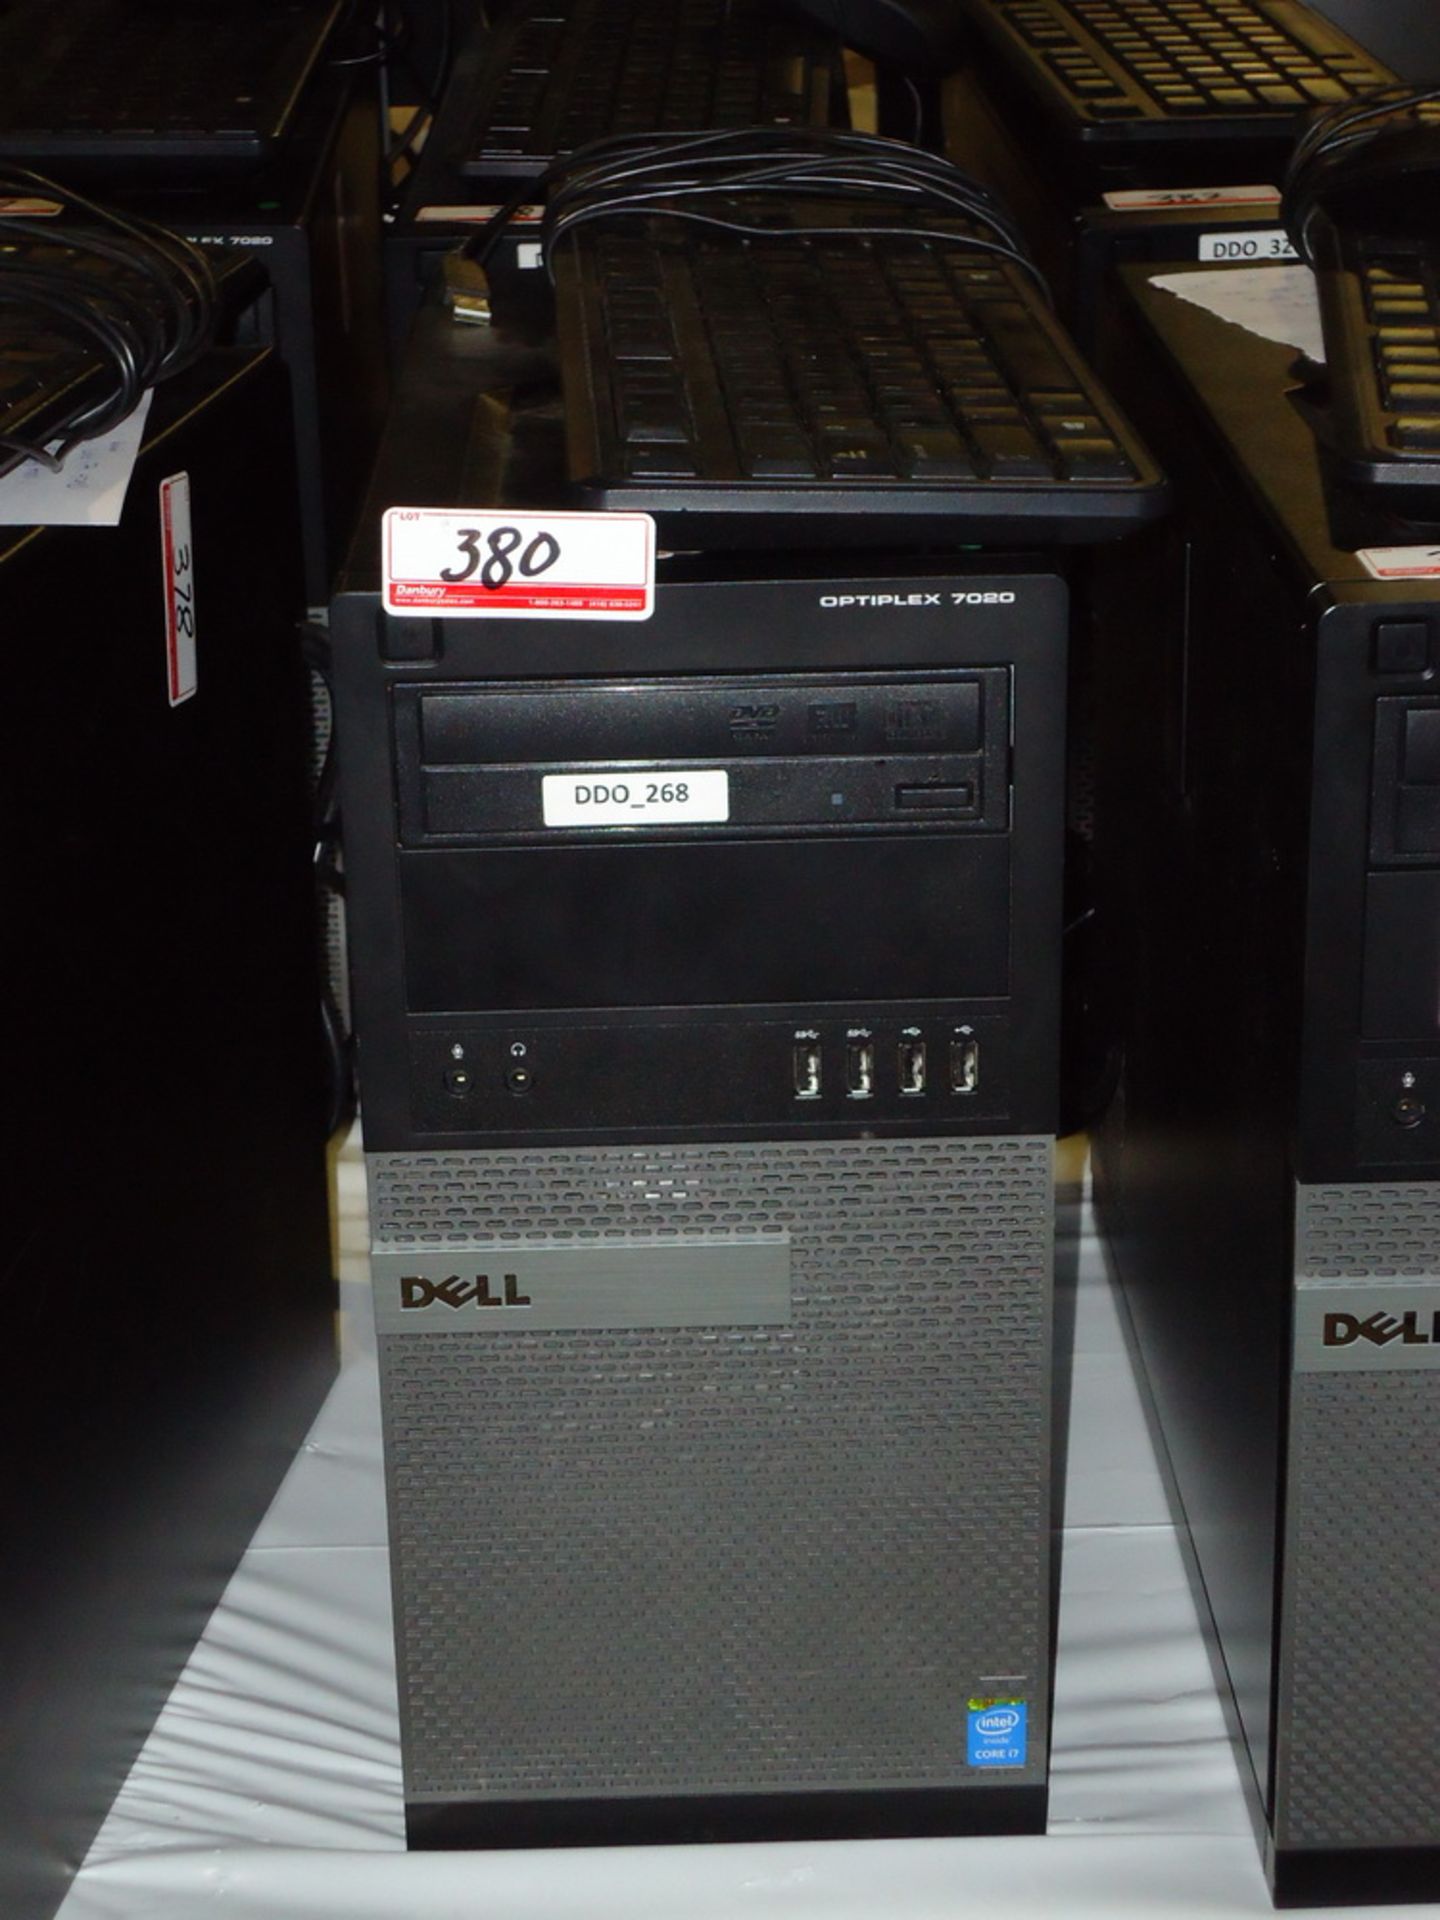 2015 DELL OPTIPLEX 7020 TOWER PC W/ INTEL QUAD CORE I7 4790 3.60GHZ PROCESSOR, 8GB RAM, 500 GB